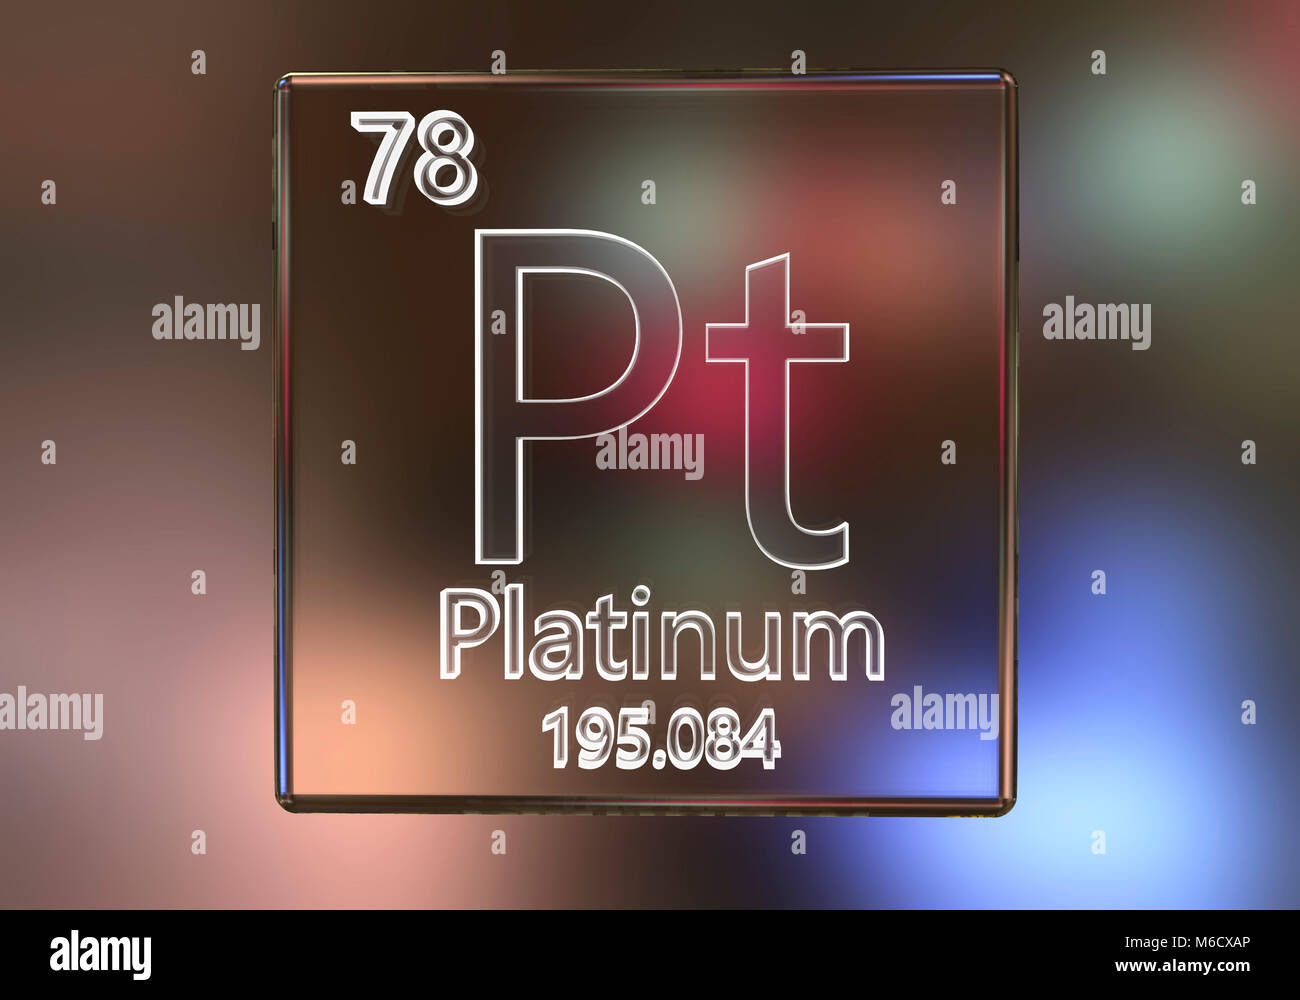 Platinum o elemento de la tabla periódica, equipo de ilustración. Foto de stock